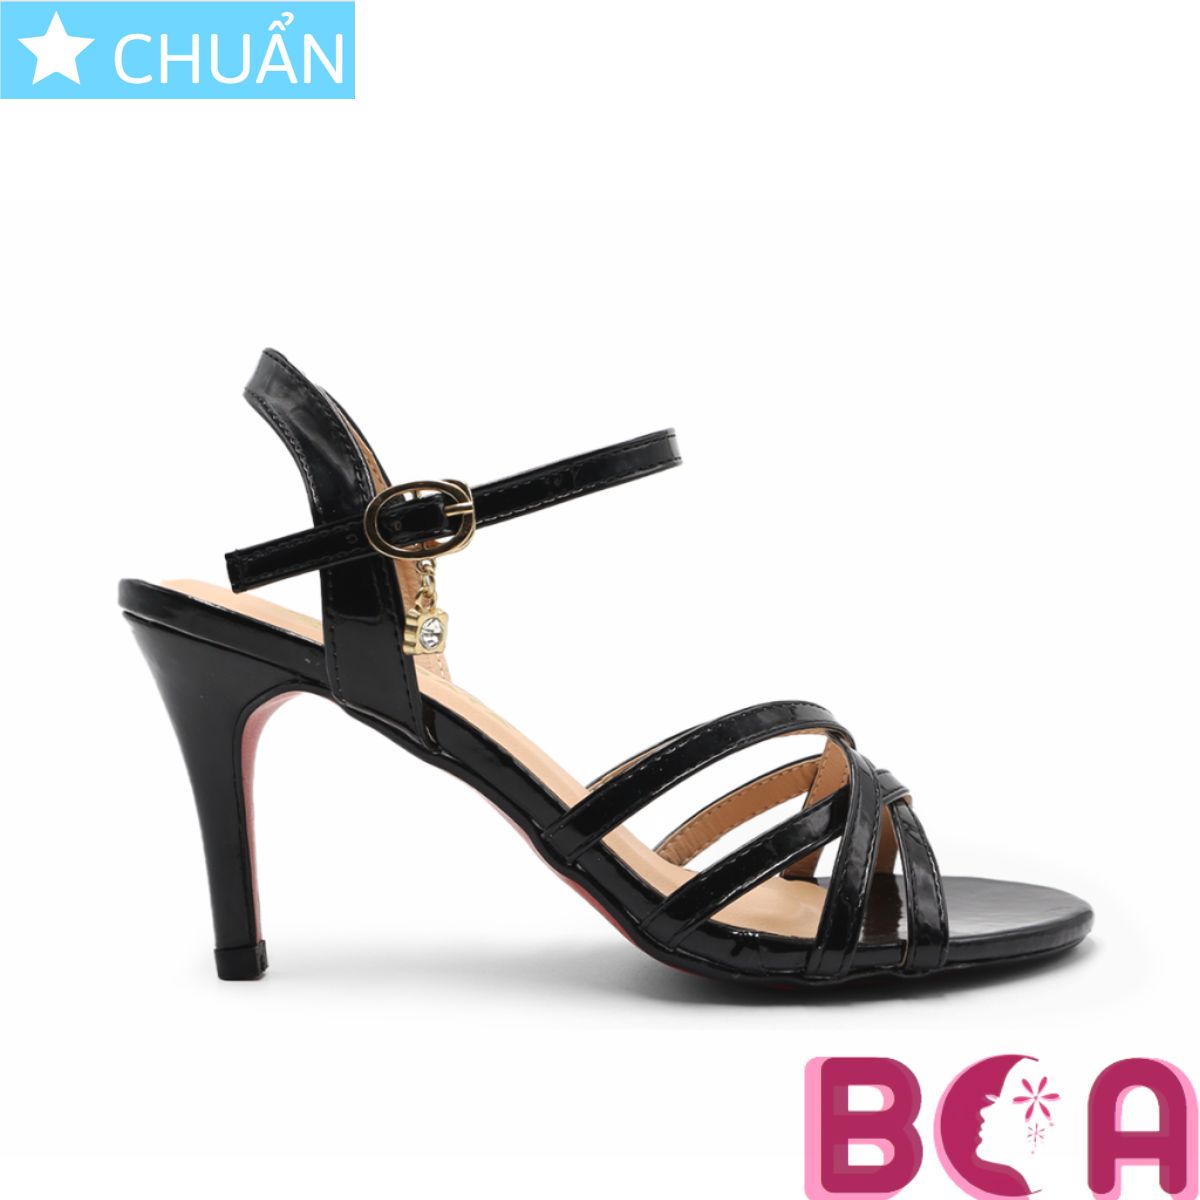 Giày cao gót nữ màu đen 7p RO543 ROSATA tại BCASHOP gót nhọn, hở mũi, kiểu dáng sandal tôn dáng và thời trang